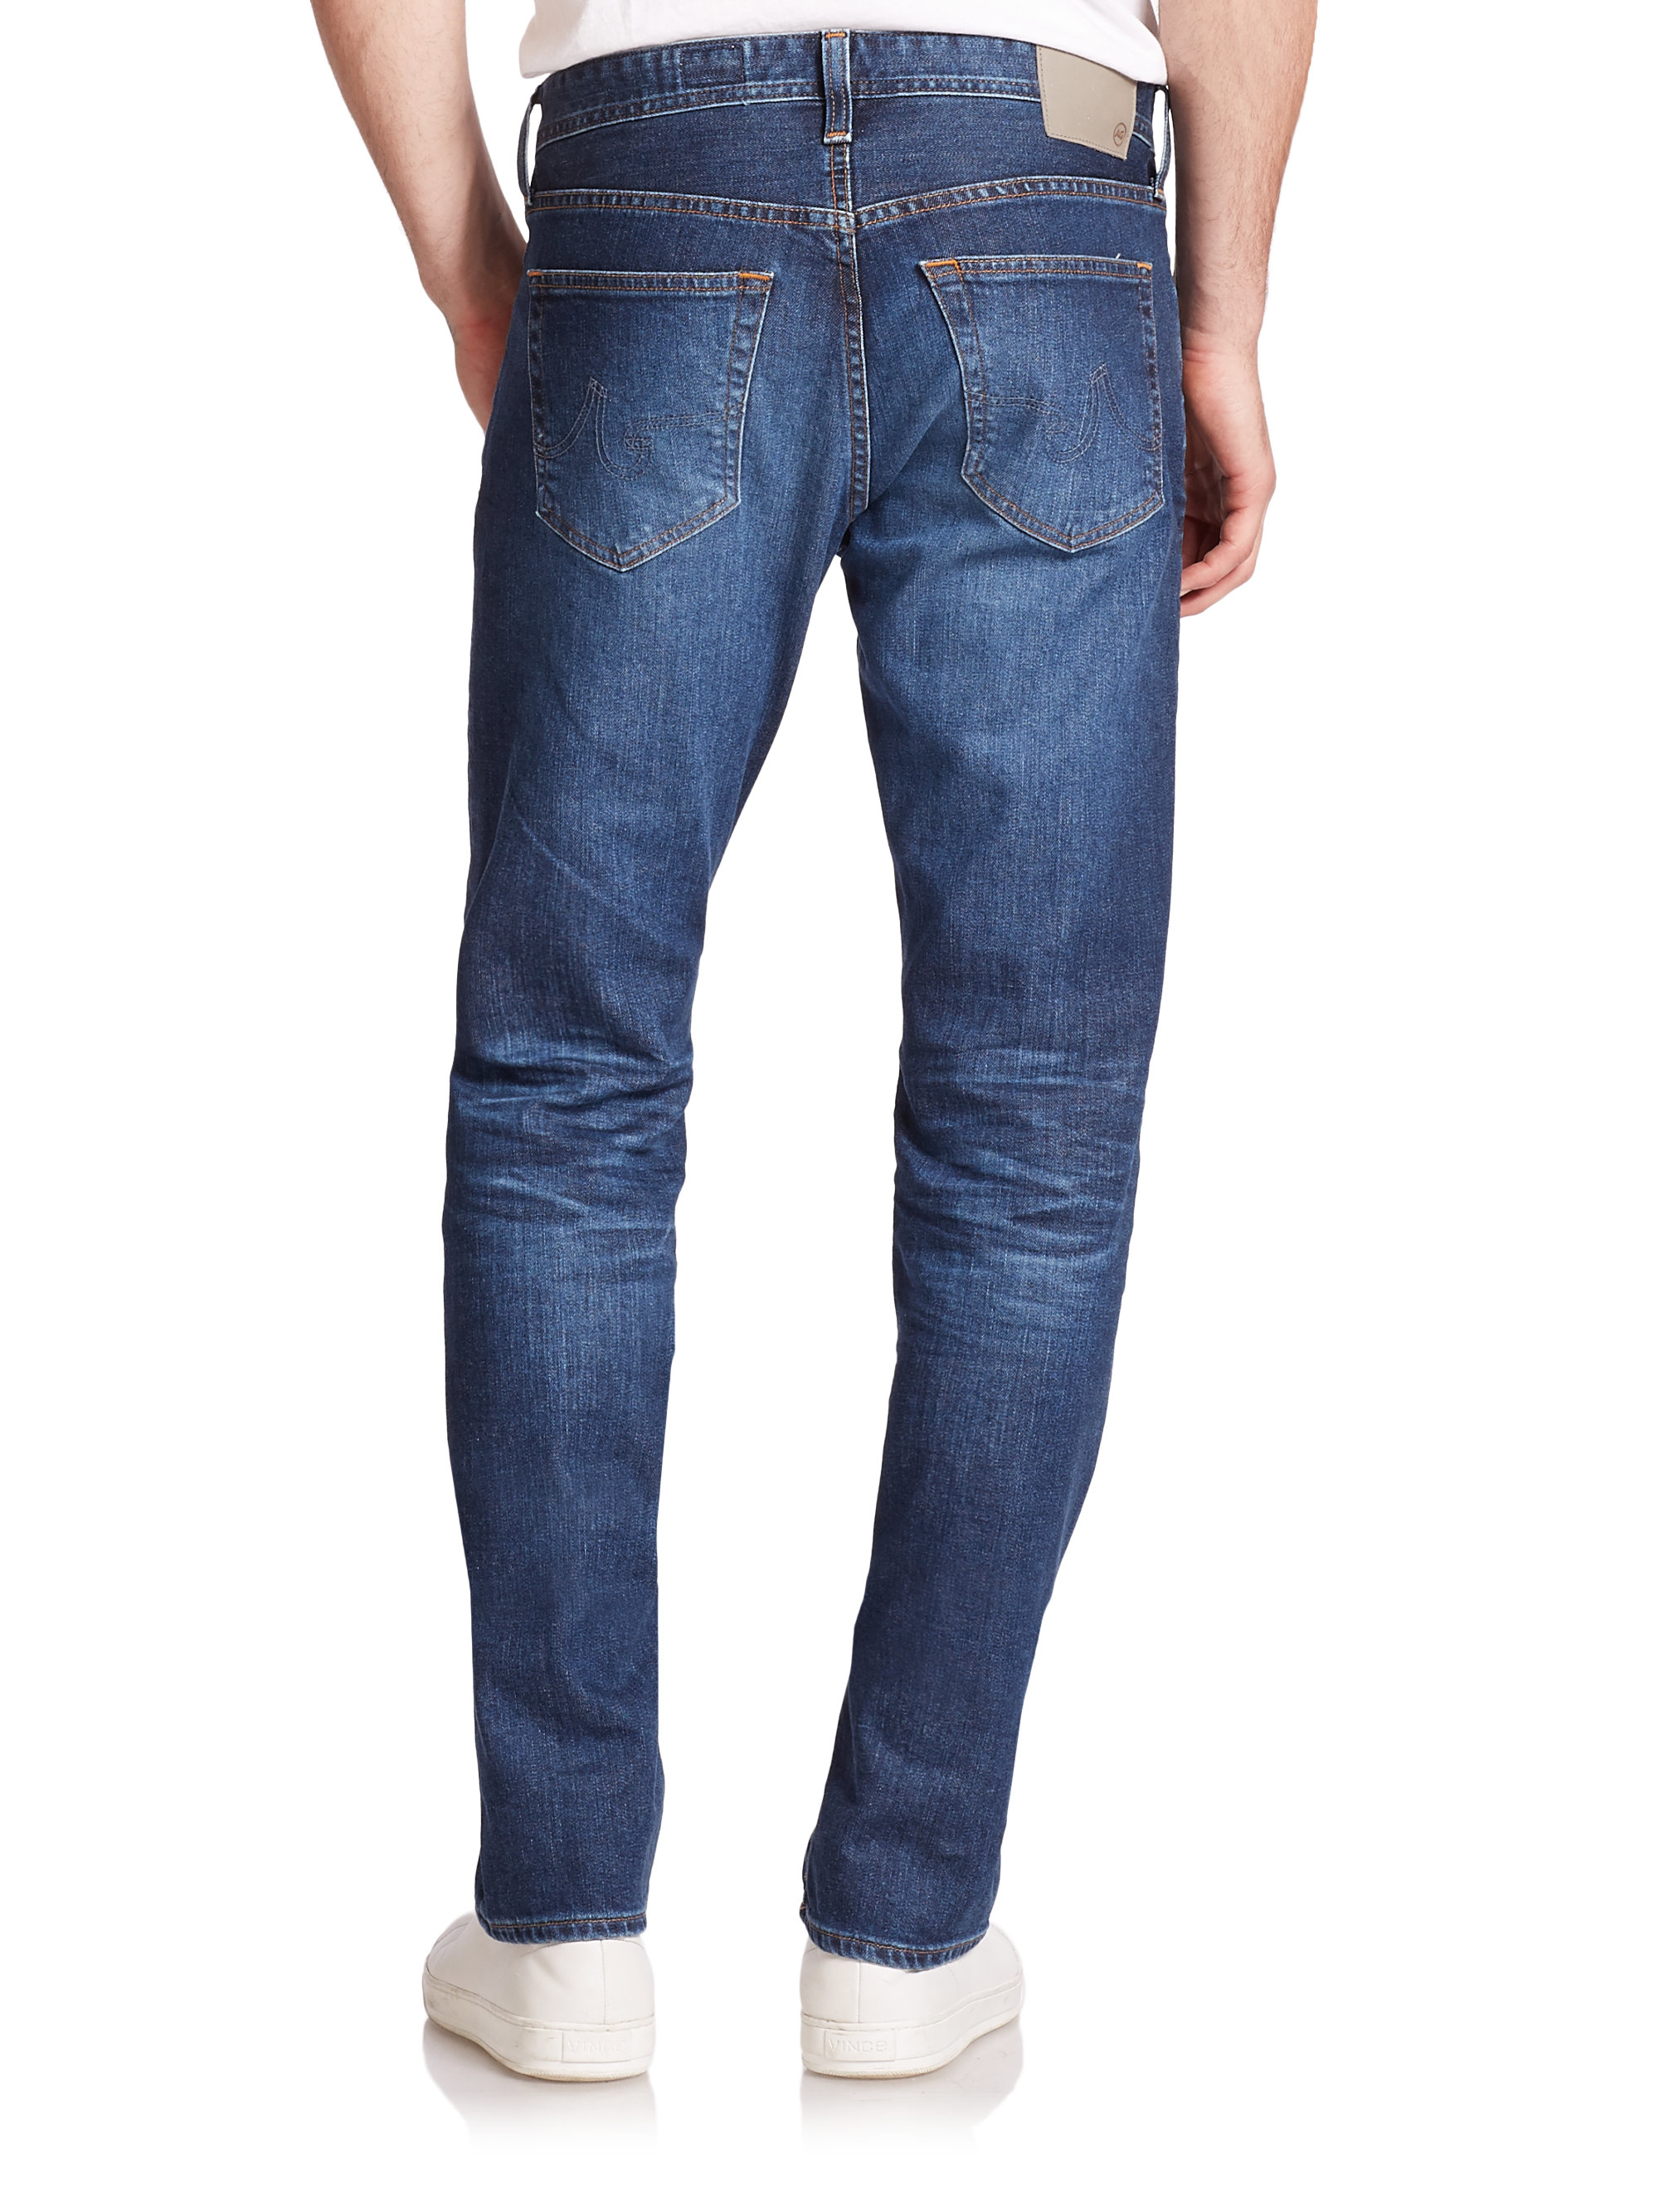 Lyst - Ag Jeans Matchbox Slim-straight Jeans in Blue for Men